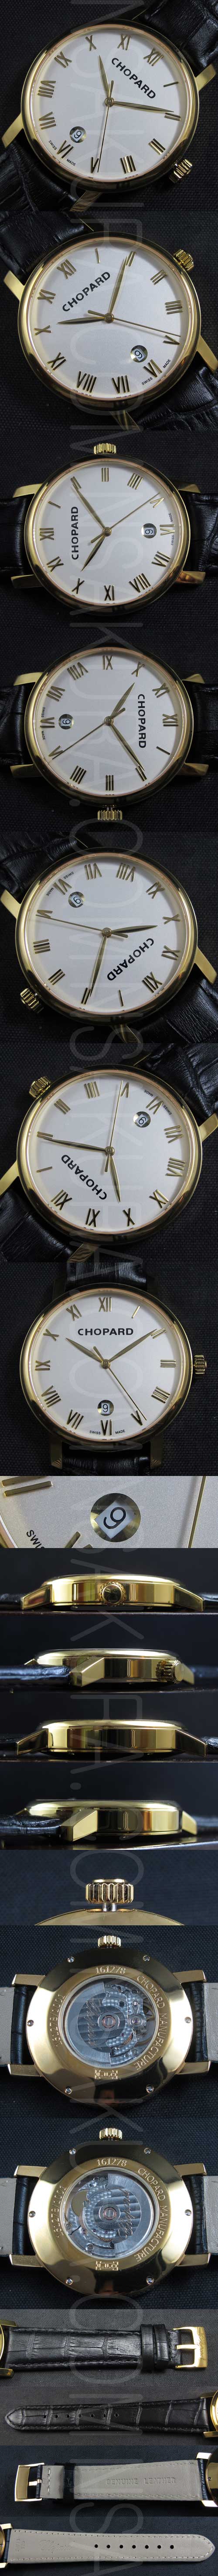 ショパール腕時計の説明